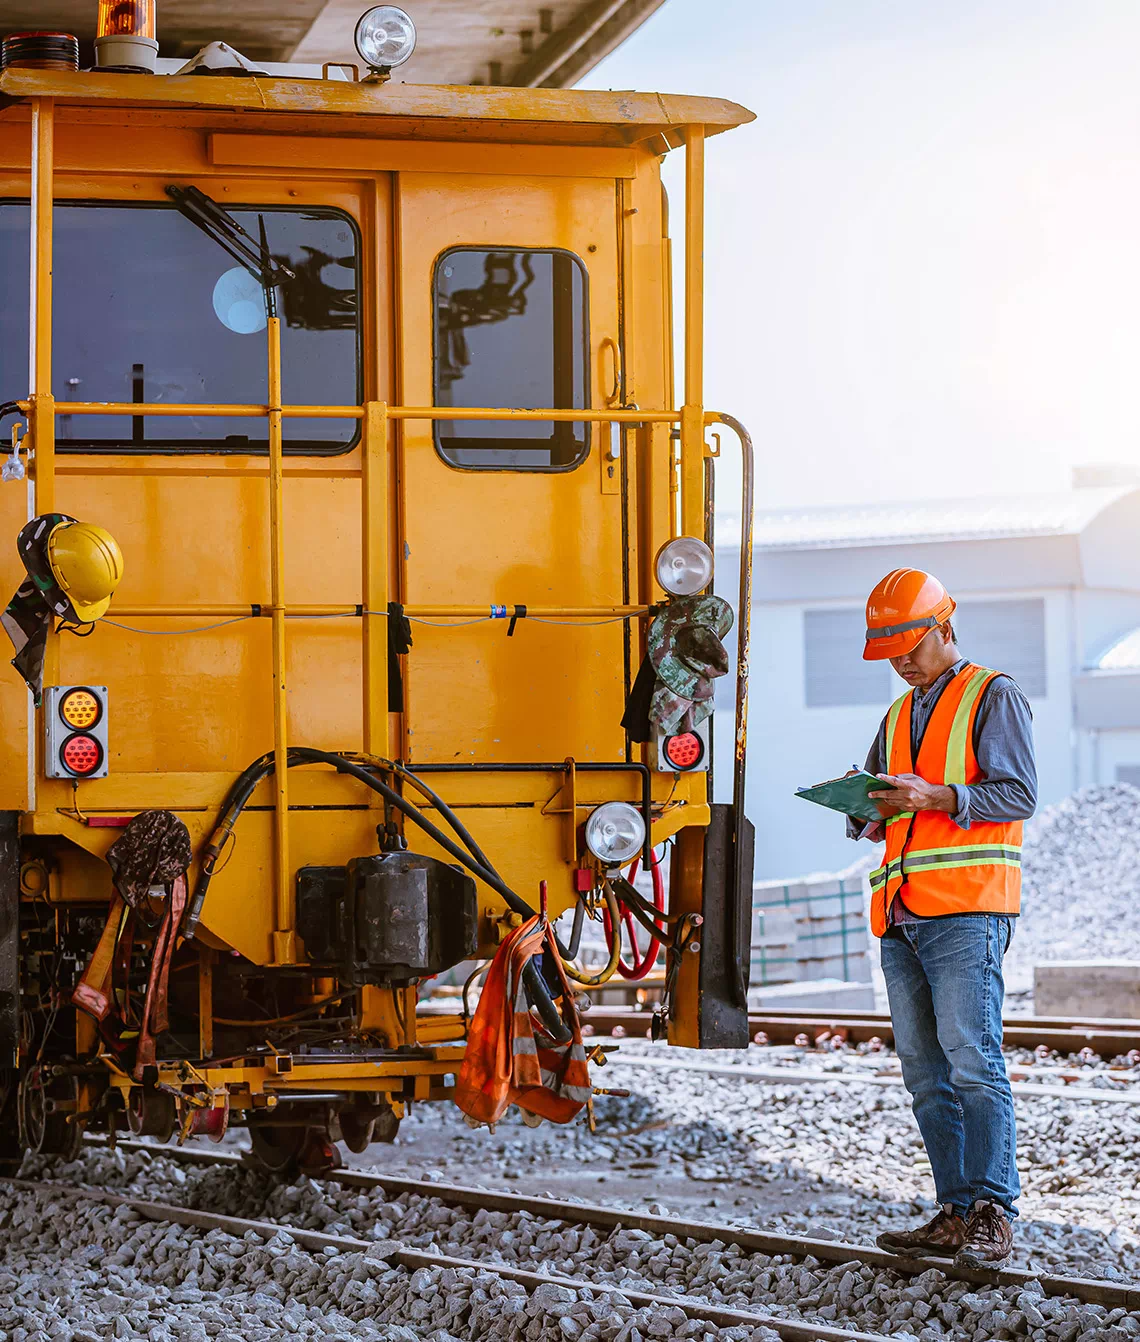 Żółty pociąg i pracownik